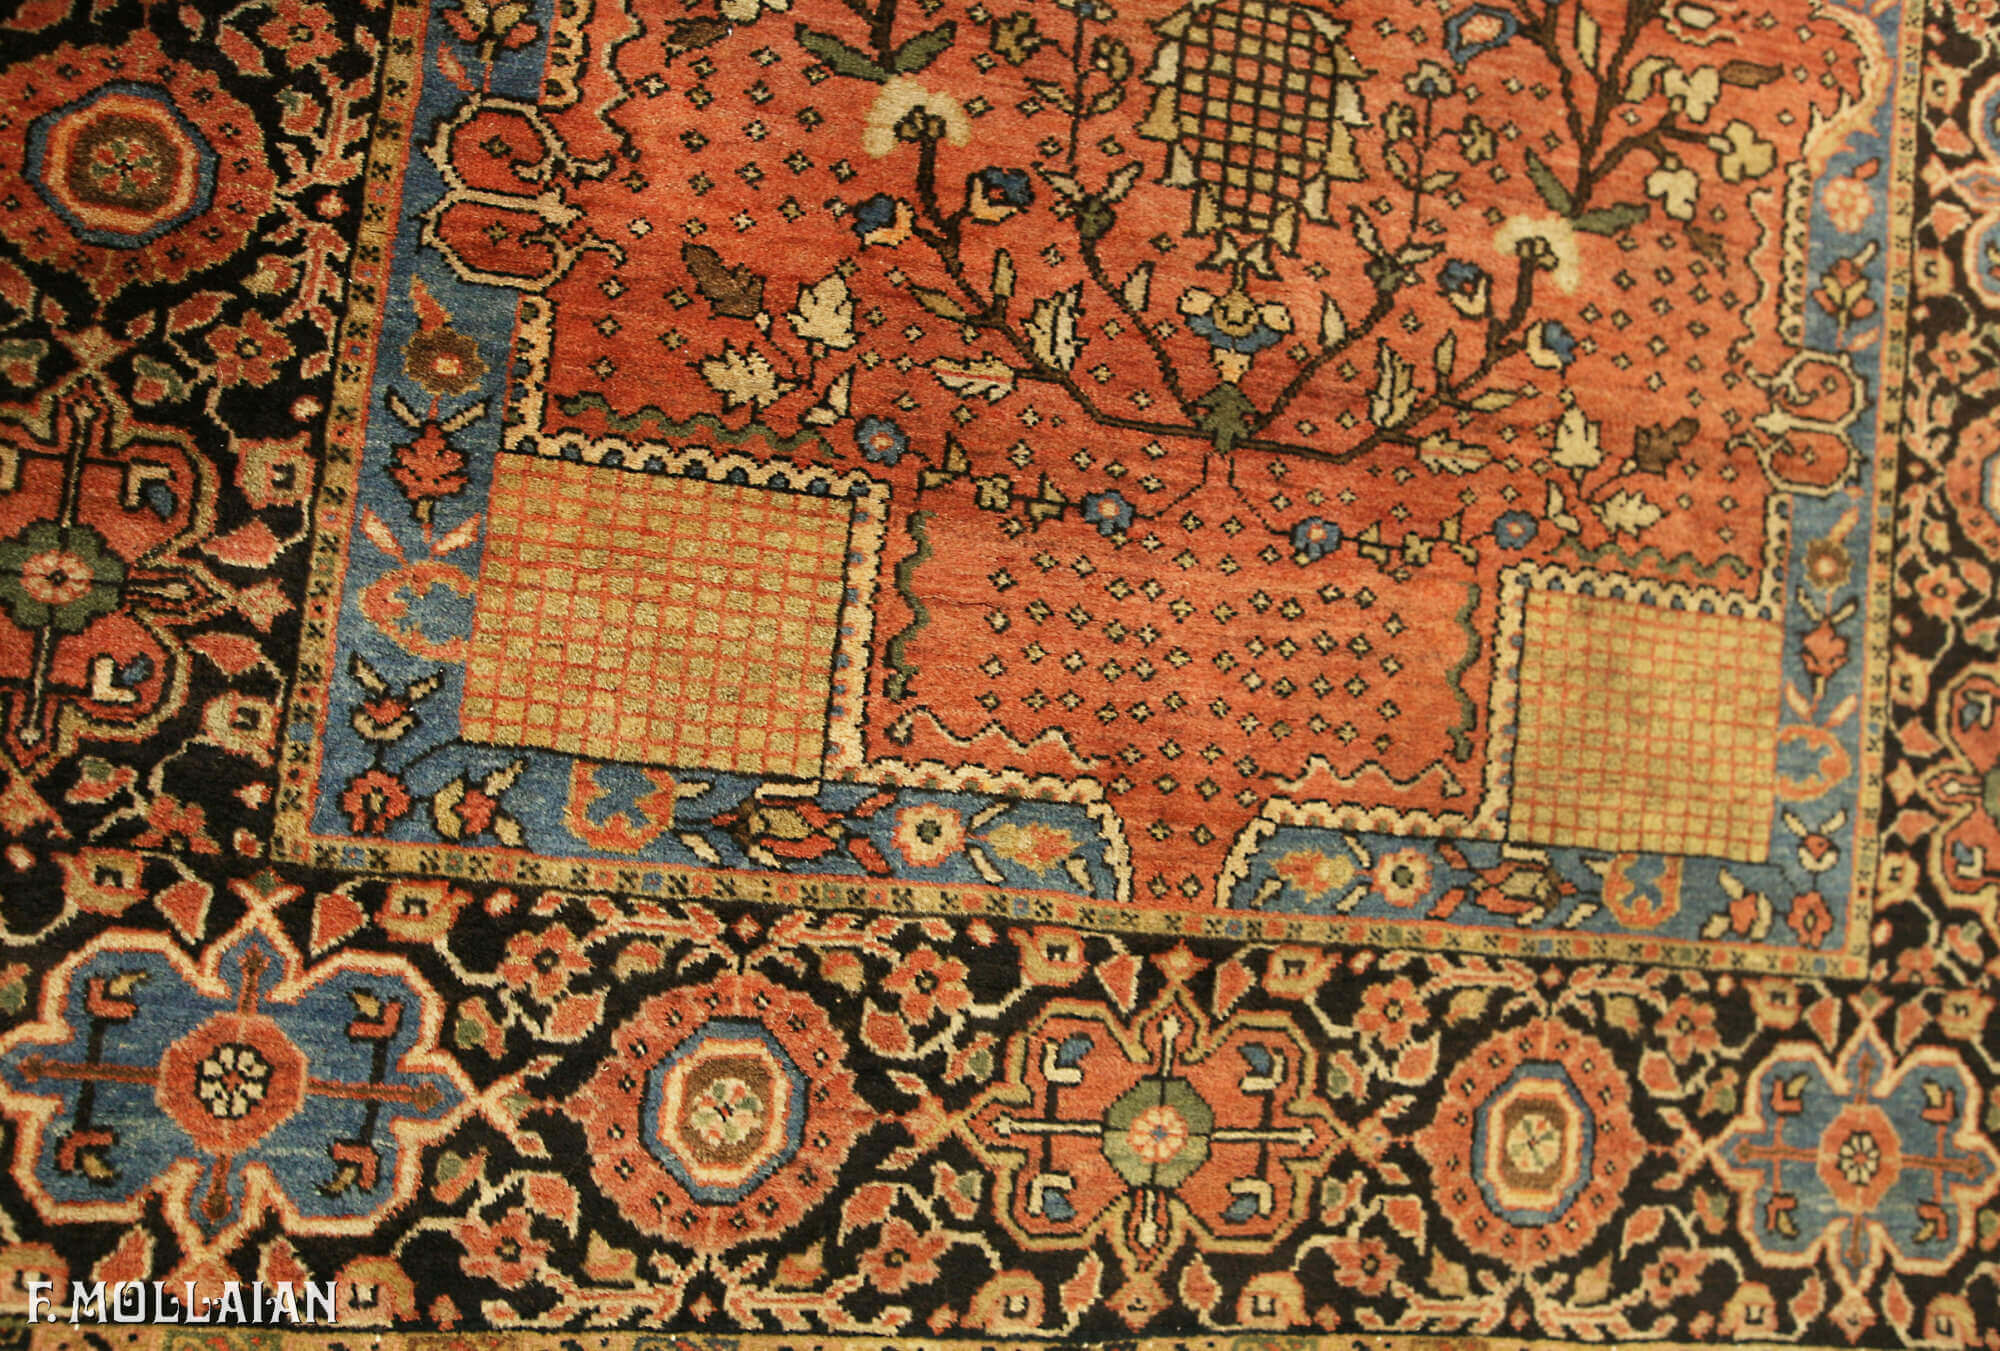 Teppich Persischer Antiker Saruk Farahan n°:30592032